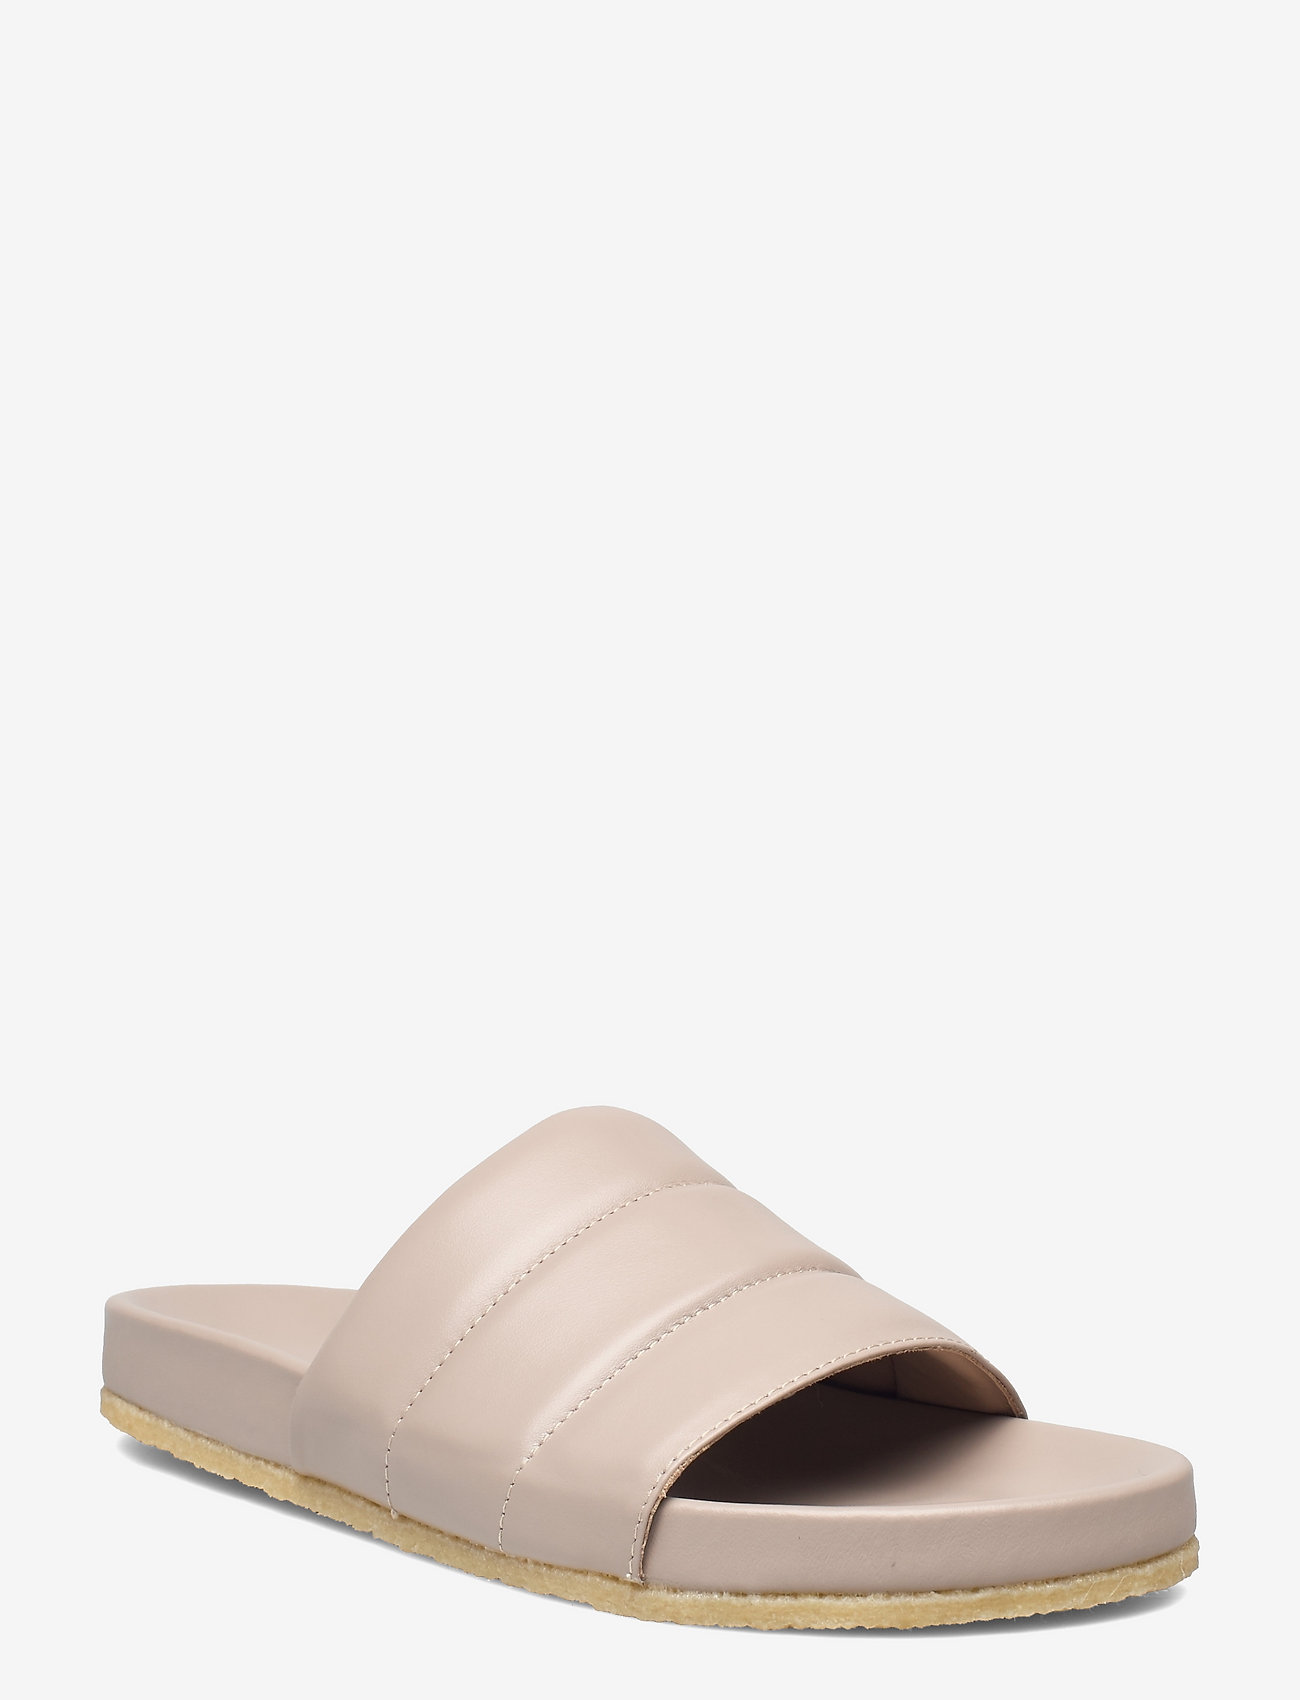 ANGULUS - Sandals - flat - open toe - op - platta sandaler - 1501 light beige - 0